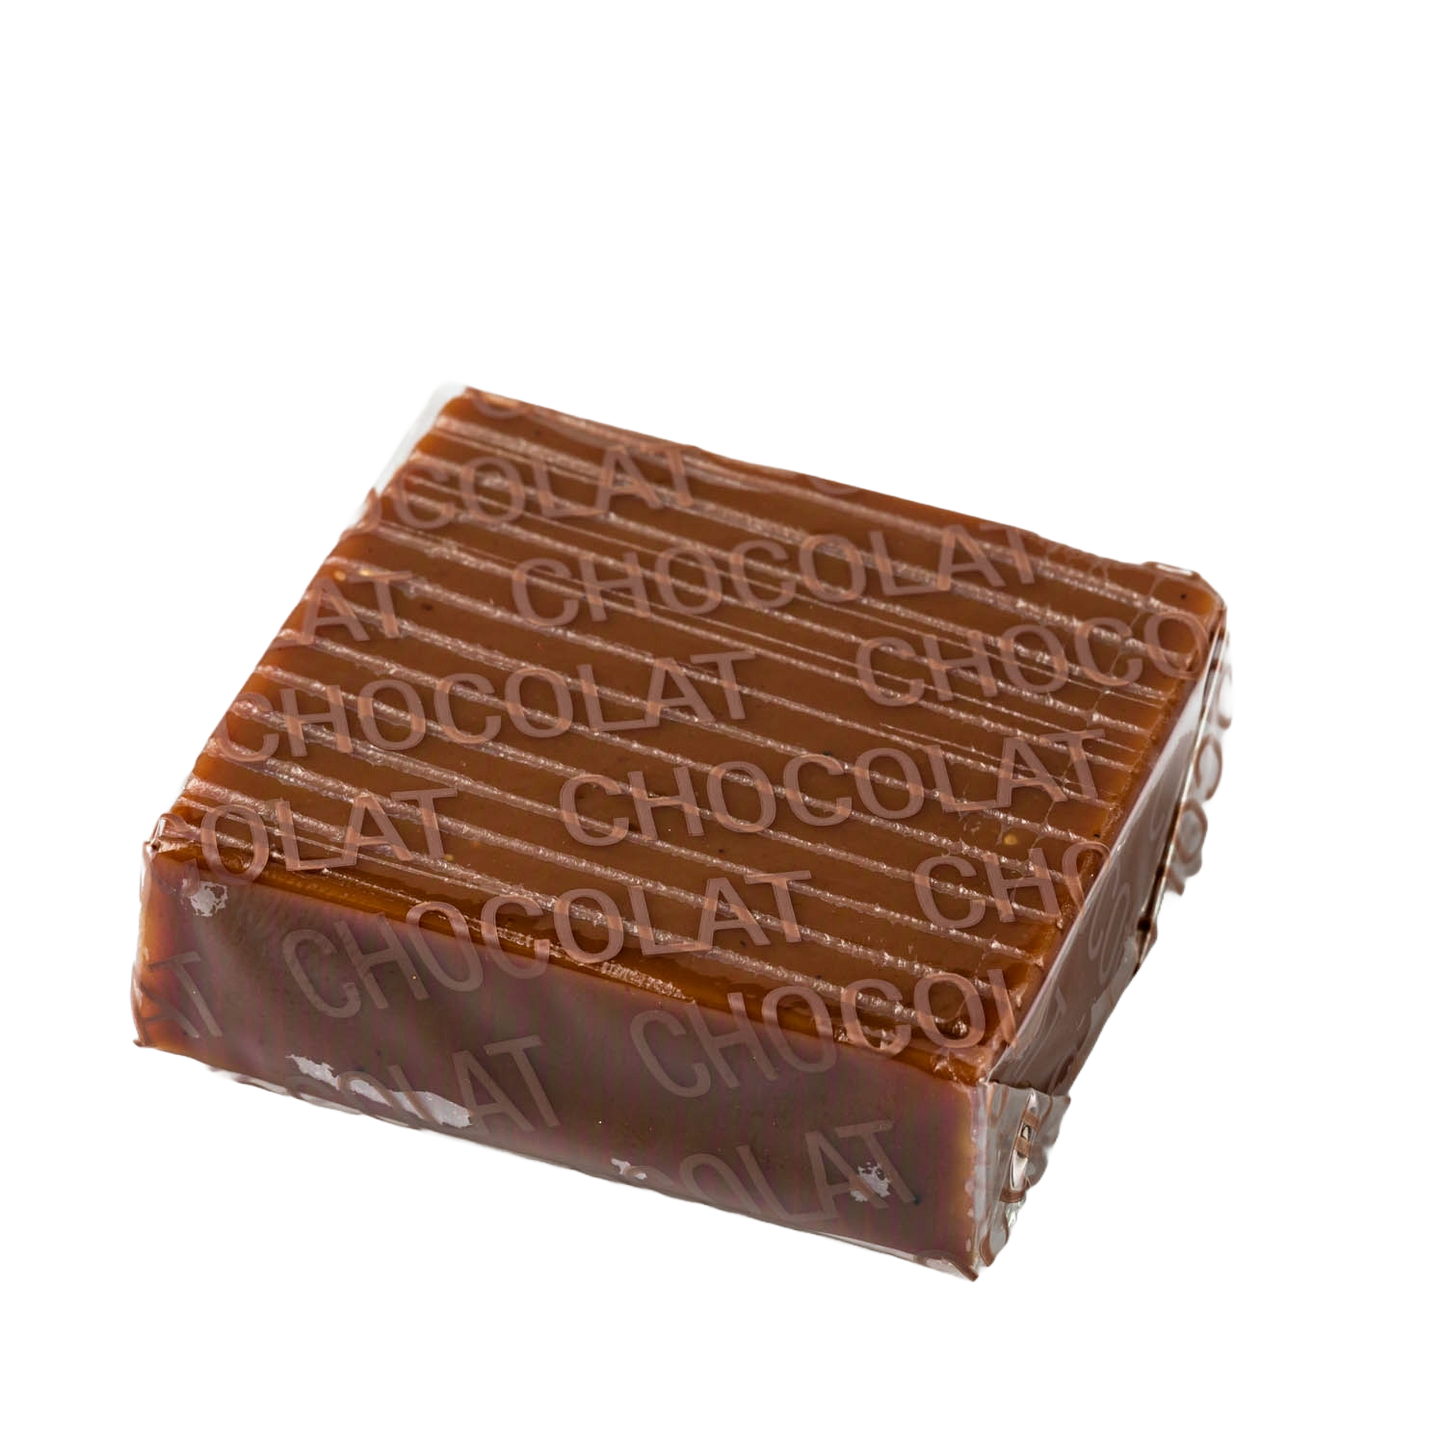 Caramel Chocolat